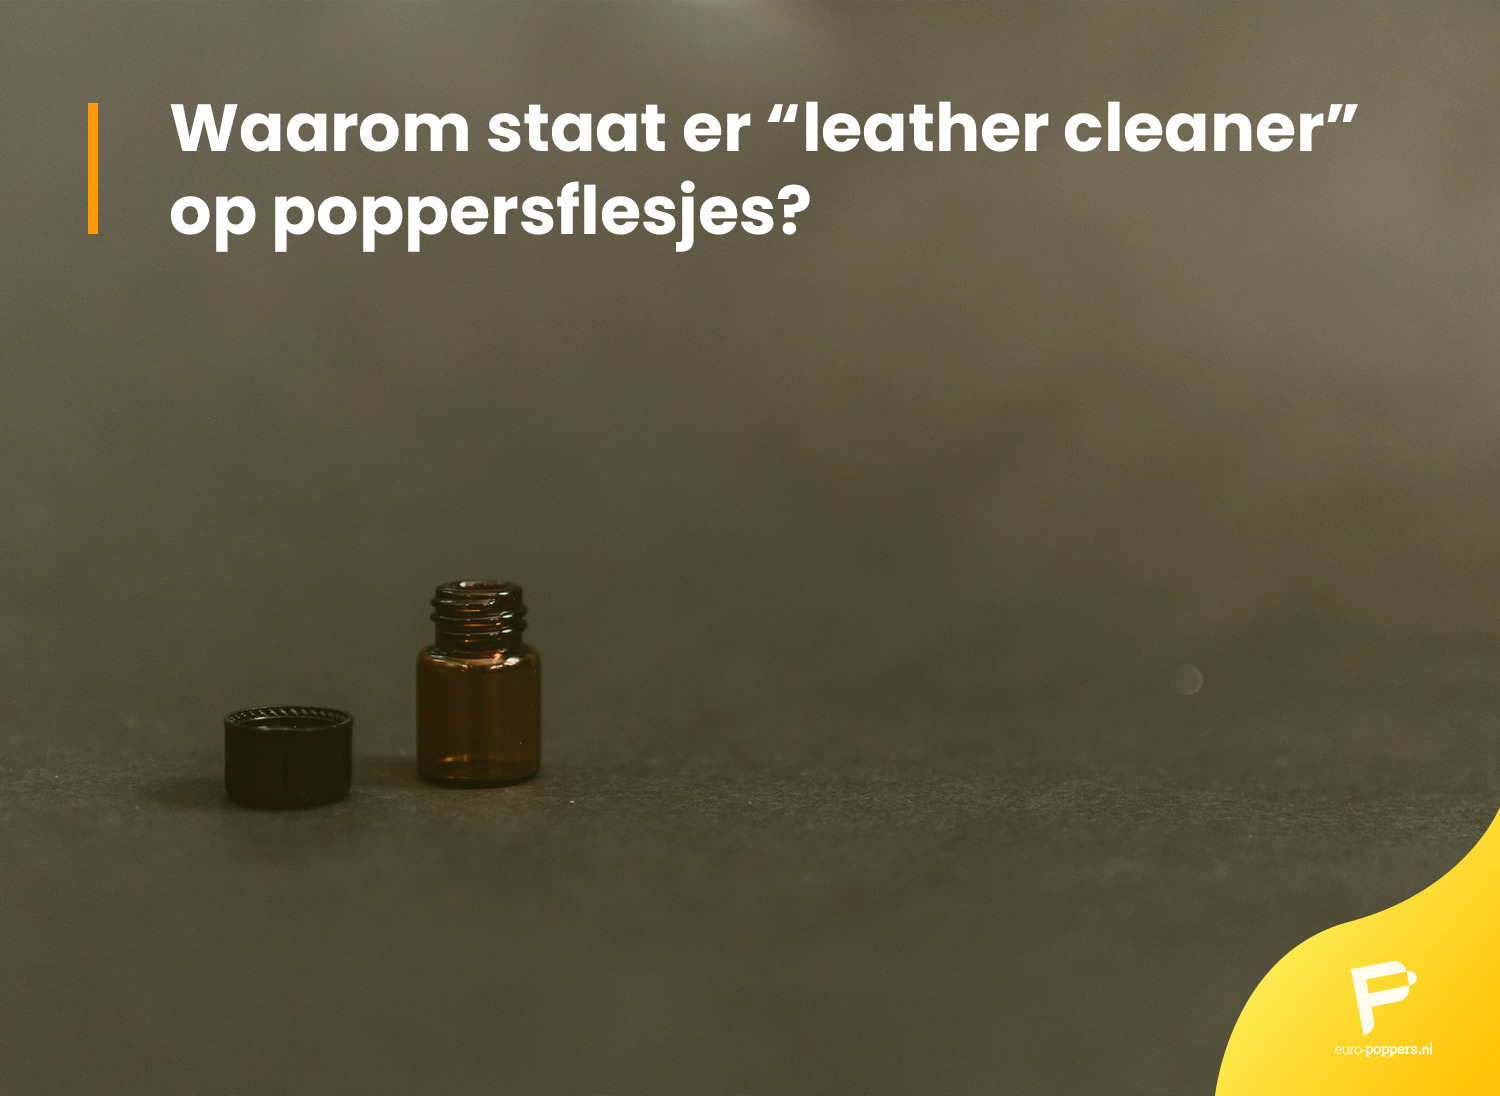 Je bekijkt nu Waarom staat er “leather cleaner” op poppersflesjes?